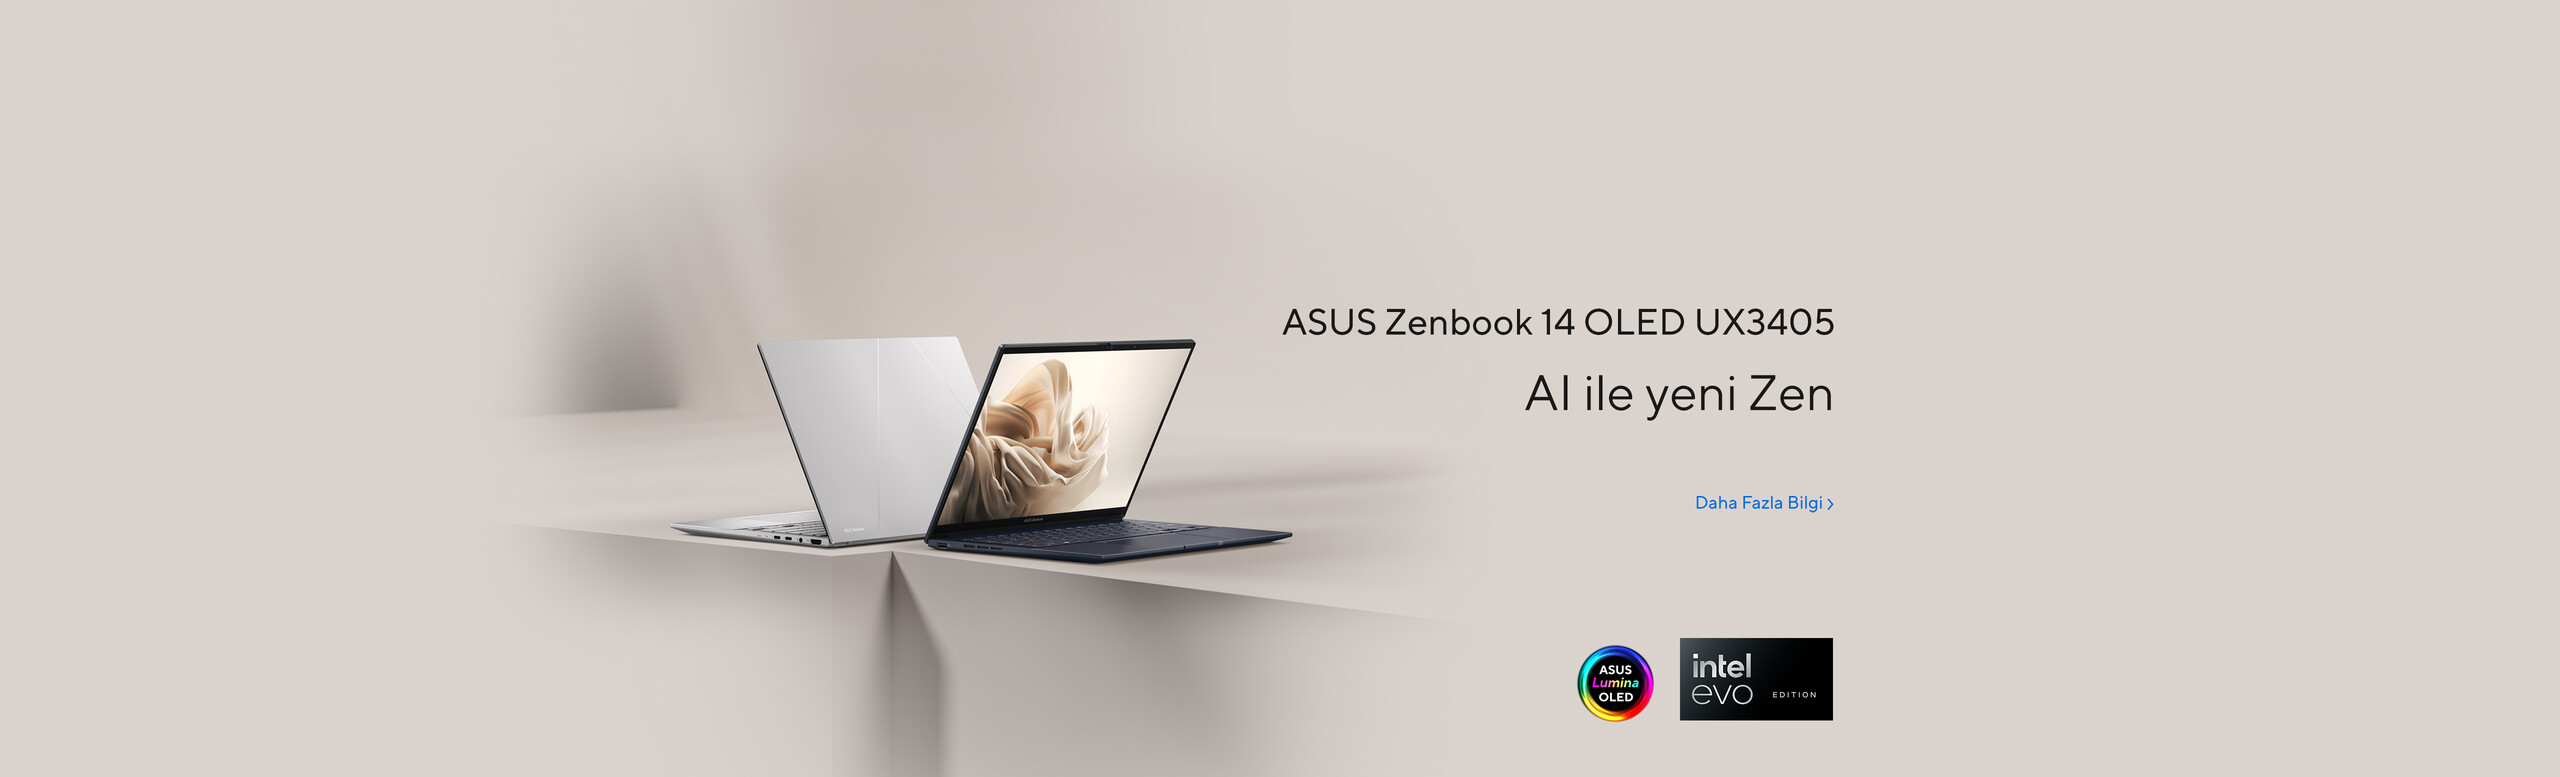 Güçlü. Taşınabilir. İnanılmaz - ASUS Zenbook 14X OLED UX3404 şimdi satışta!